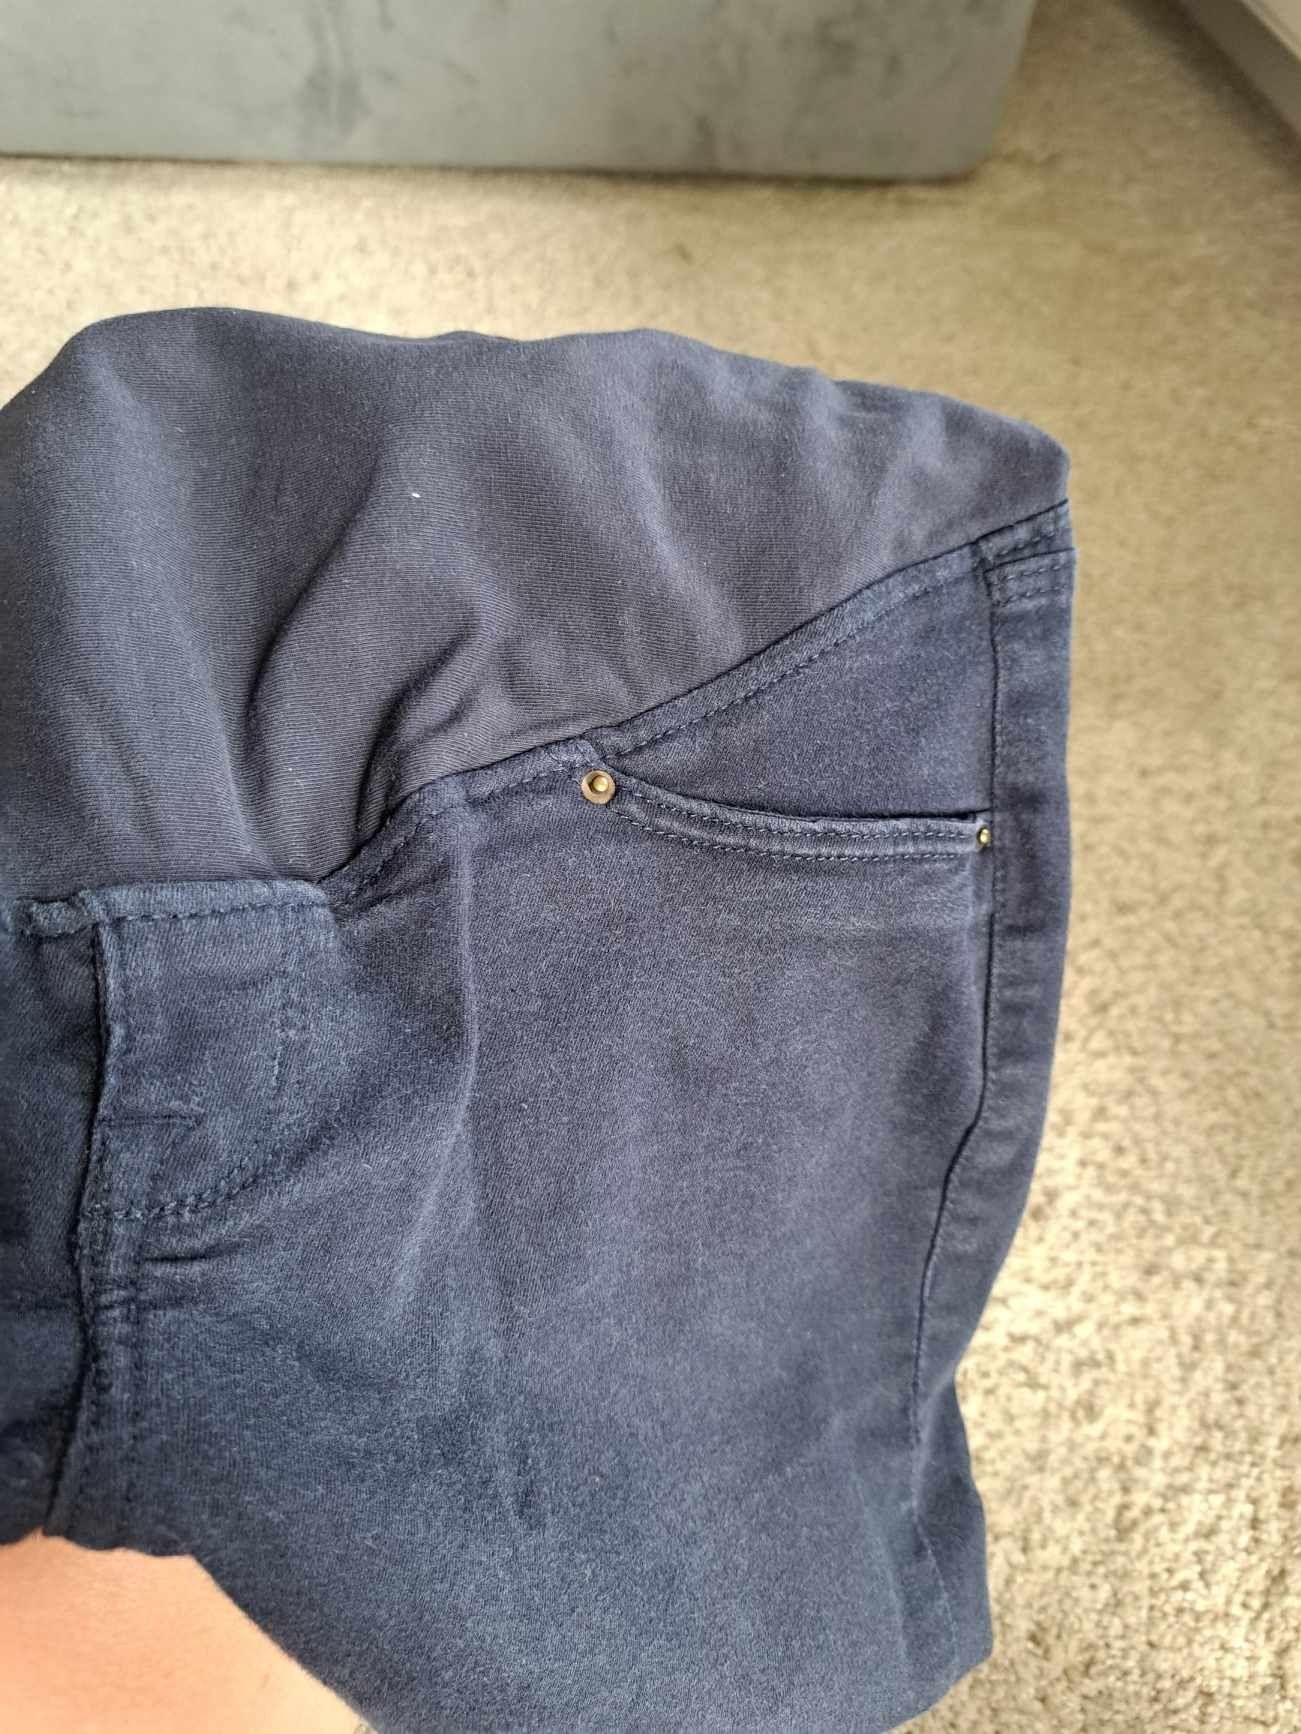 Jeansy miękkie ciążowe spodnie h&m 42 
Granatowe szare 
H&M rozmiar 42